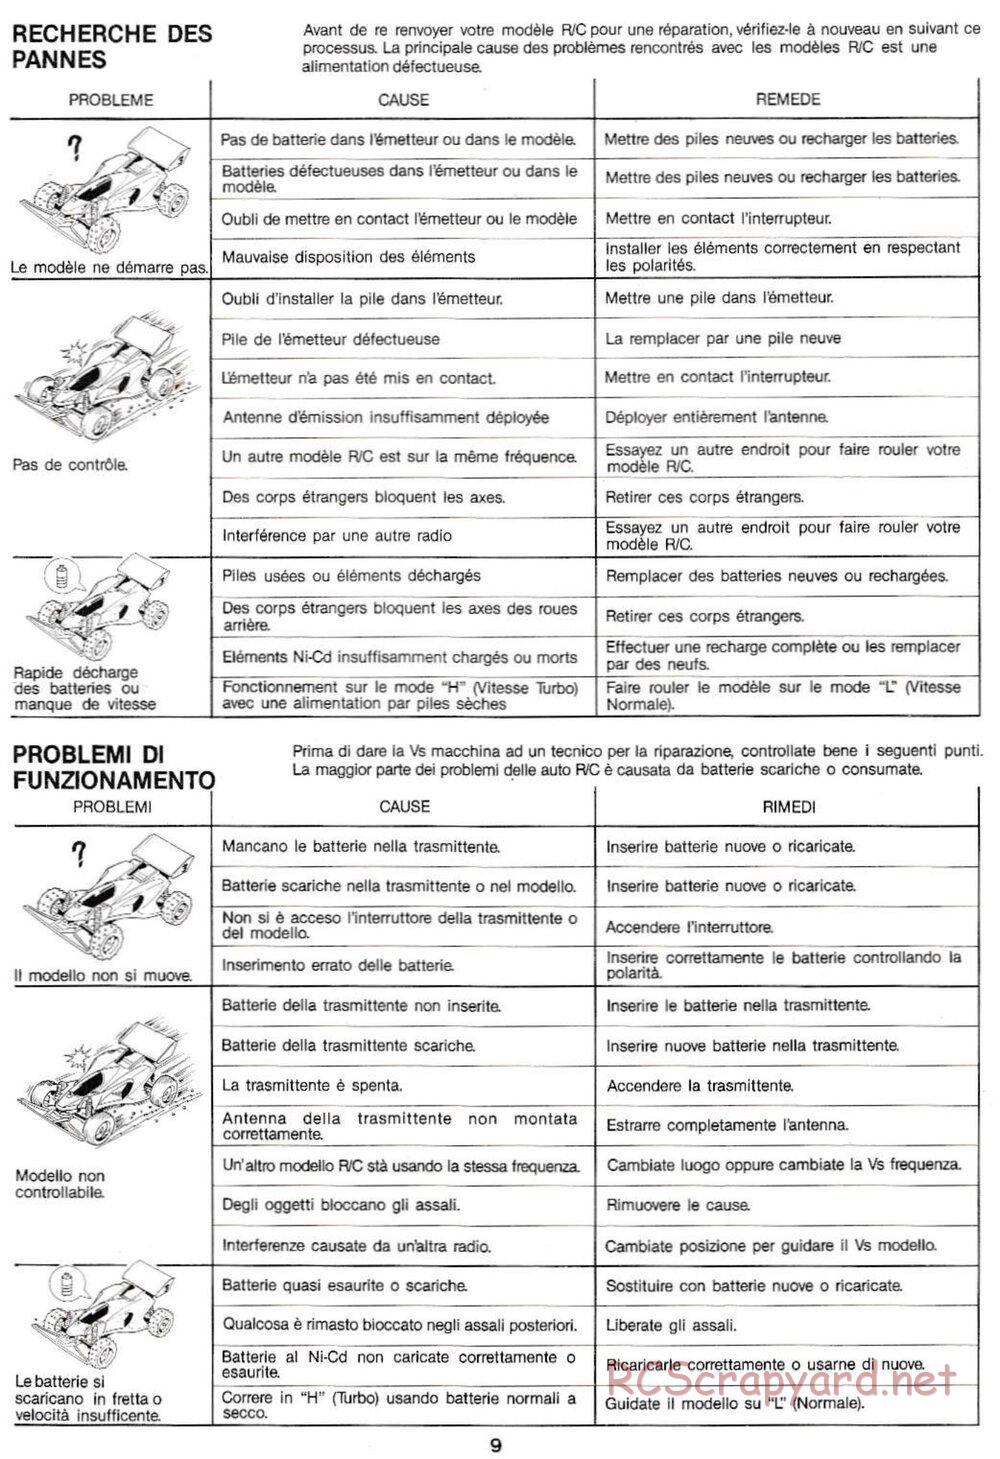 Tamiya - Manta Ray QD Chassis - Manual - Page 9